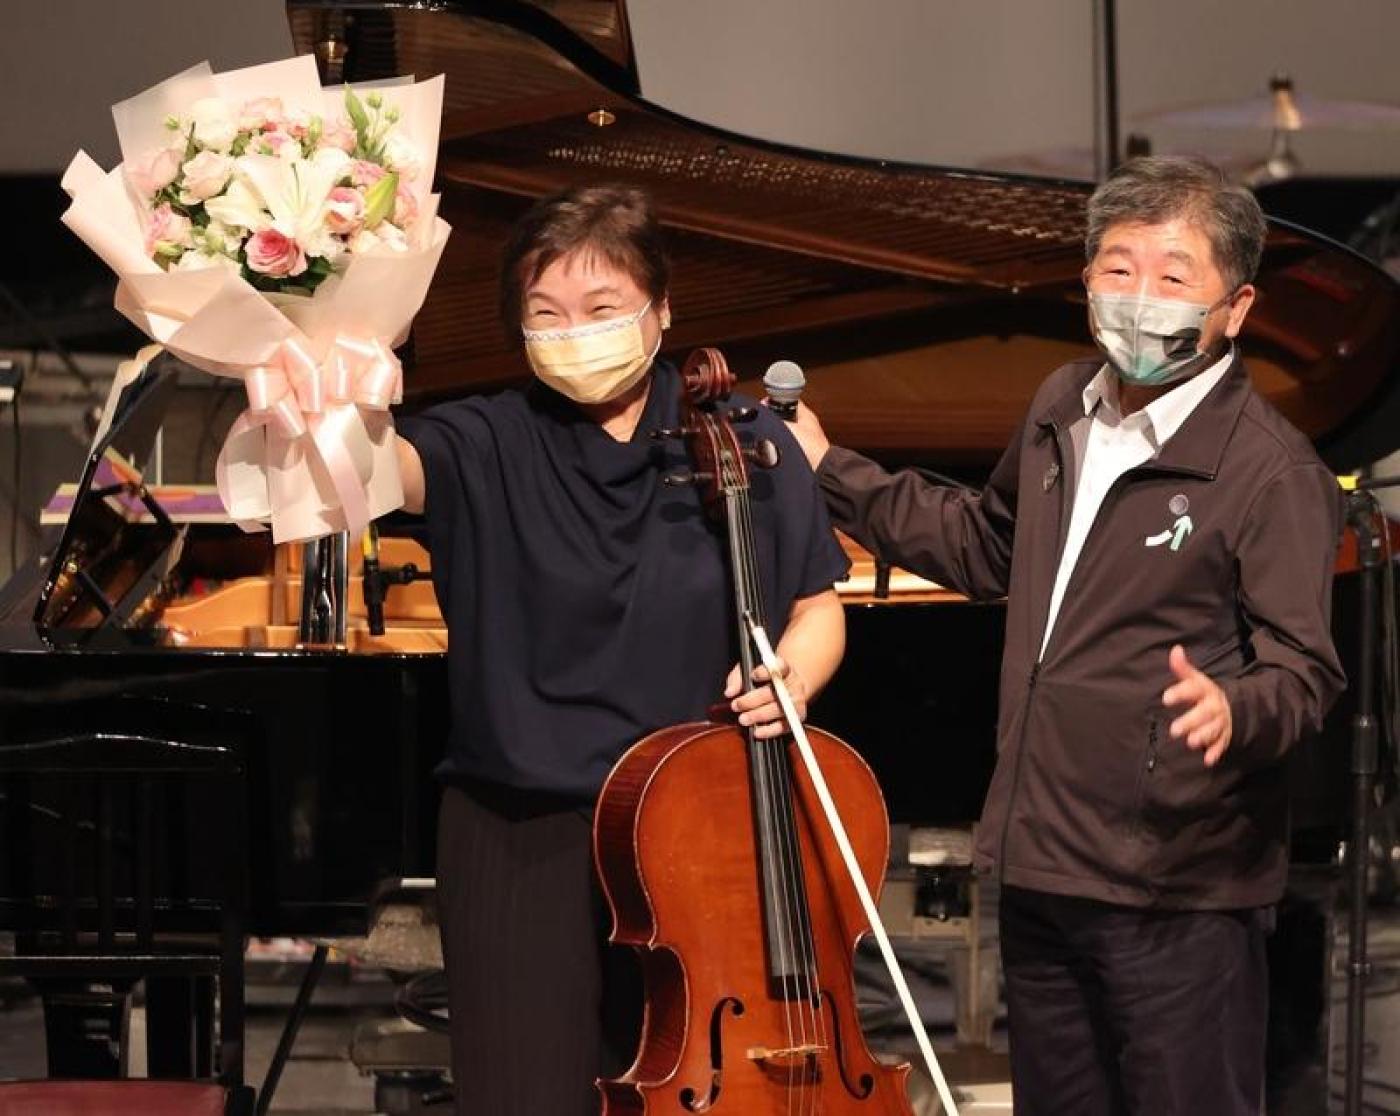 陳時中（右）的妻子、大提琴家孫琬玲（左）13日晚間在丈夫的音樂會獻上琴聲表達支持，這是陳時中參選以來兩人第一次公開同台。中央社